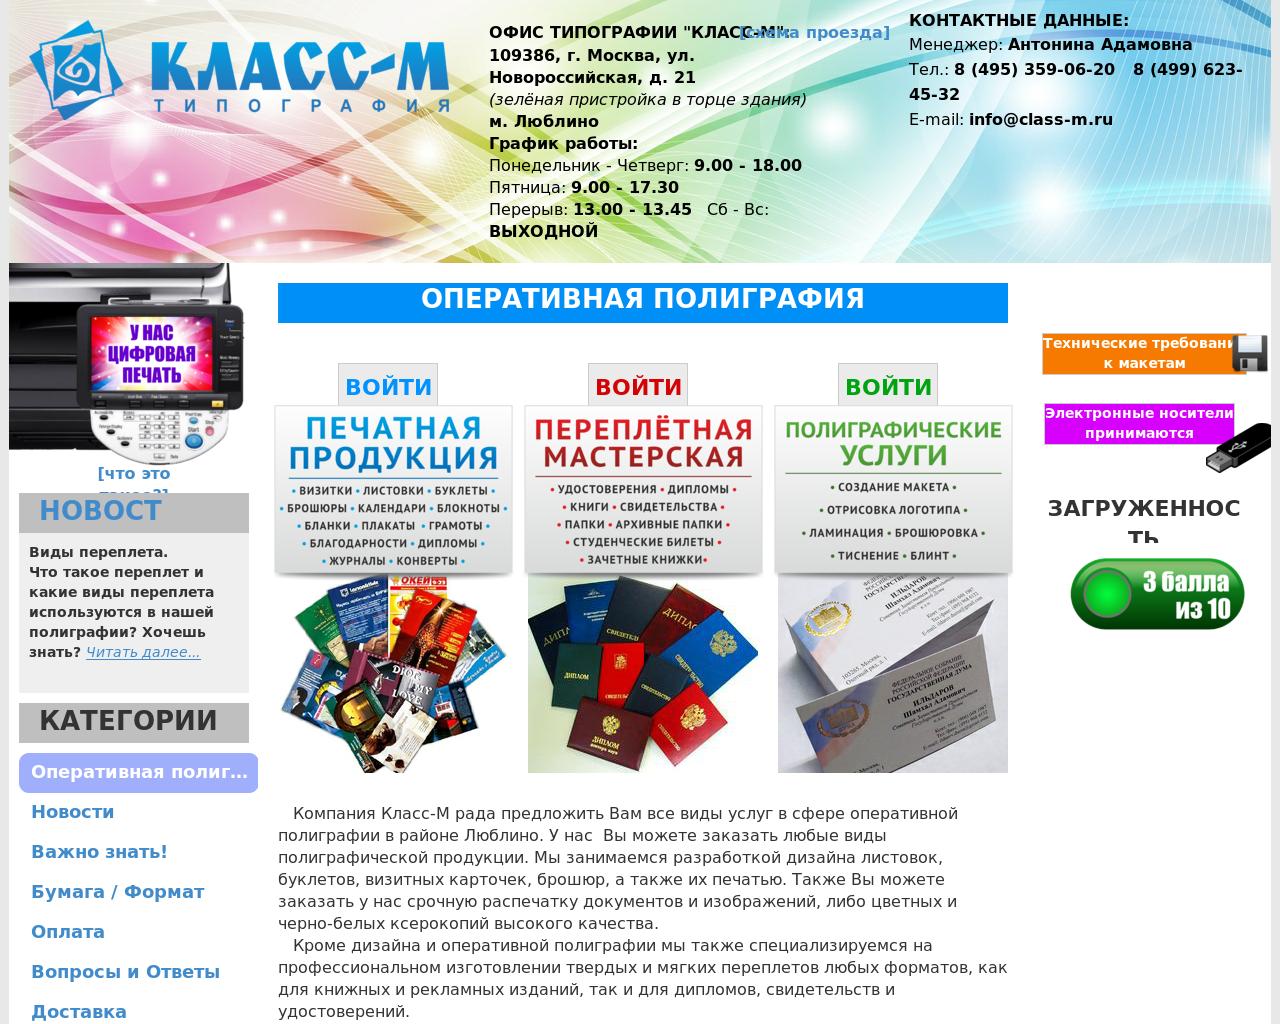 Изображение сайта class-m.ru в разрешении 1280x1024